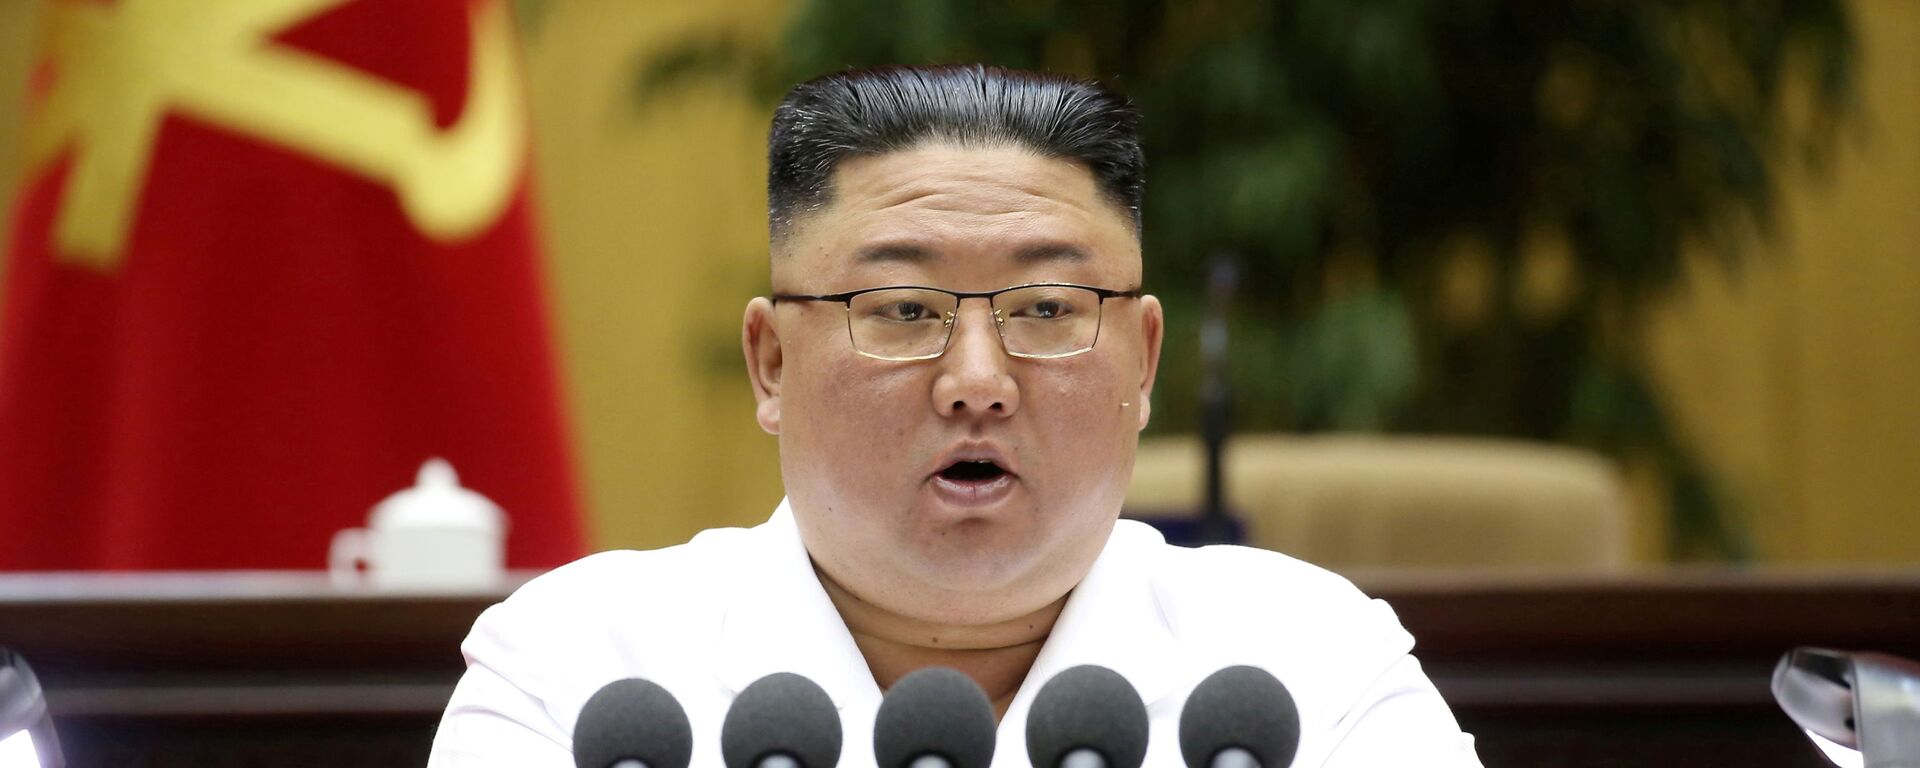 Nhà lãnh đạo Bắc Triều Tiên Kim Jong-un. - Sputnik Việt Nam, 1920, 30.09.2021